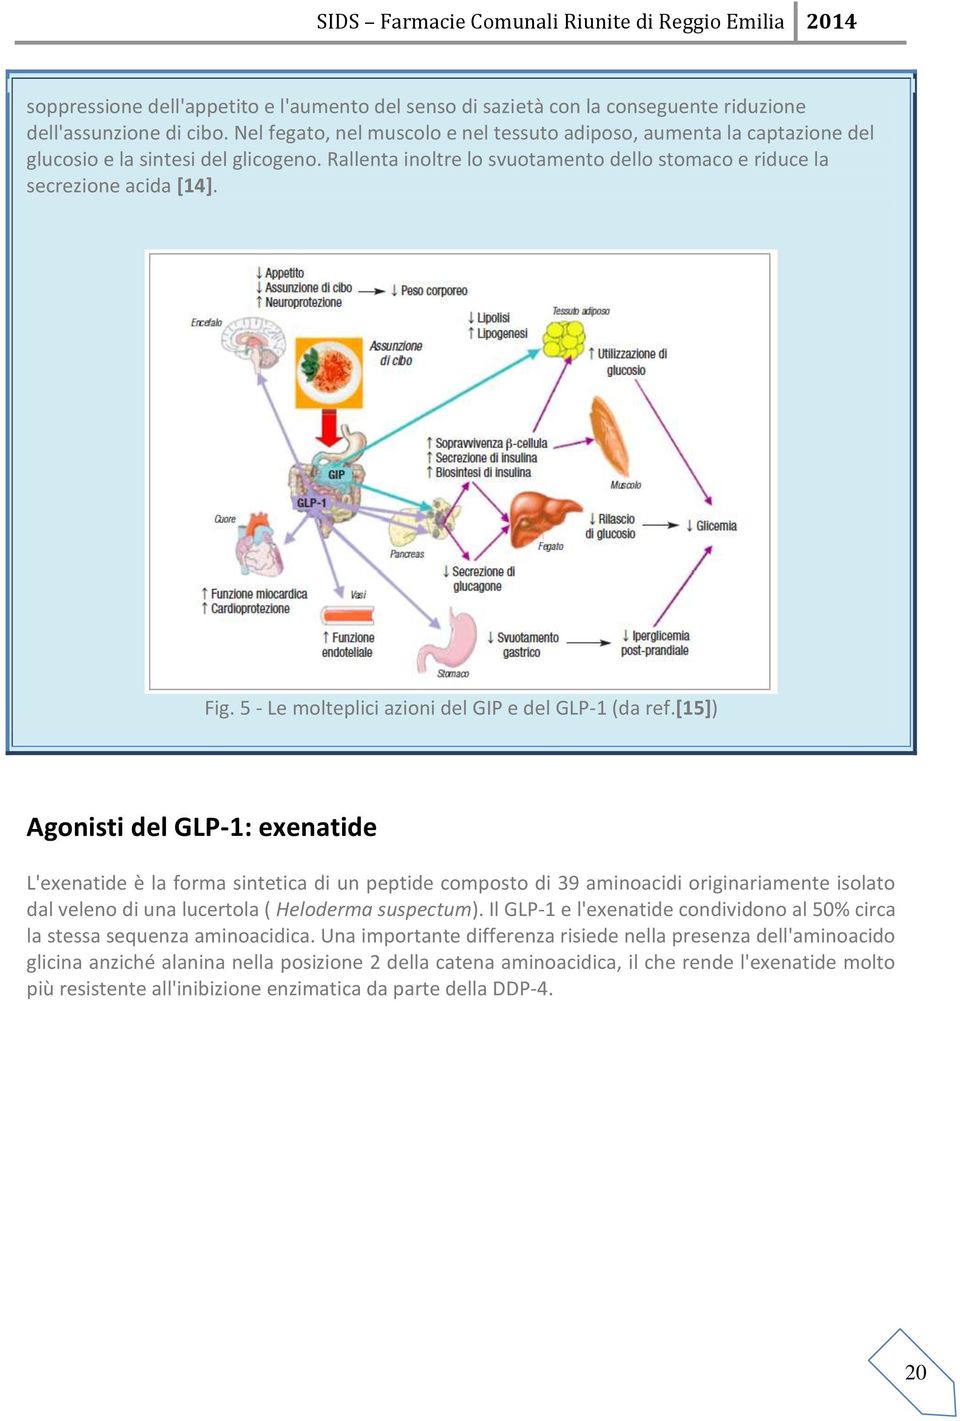 5 - Le molteplici azioni del GIP e del GLP-1 (da ref.